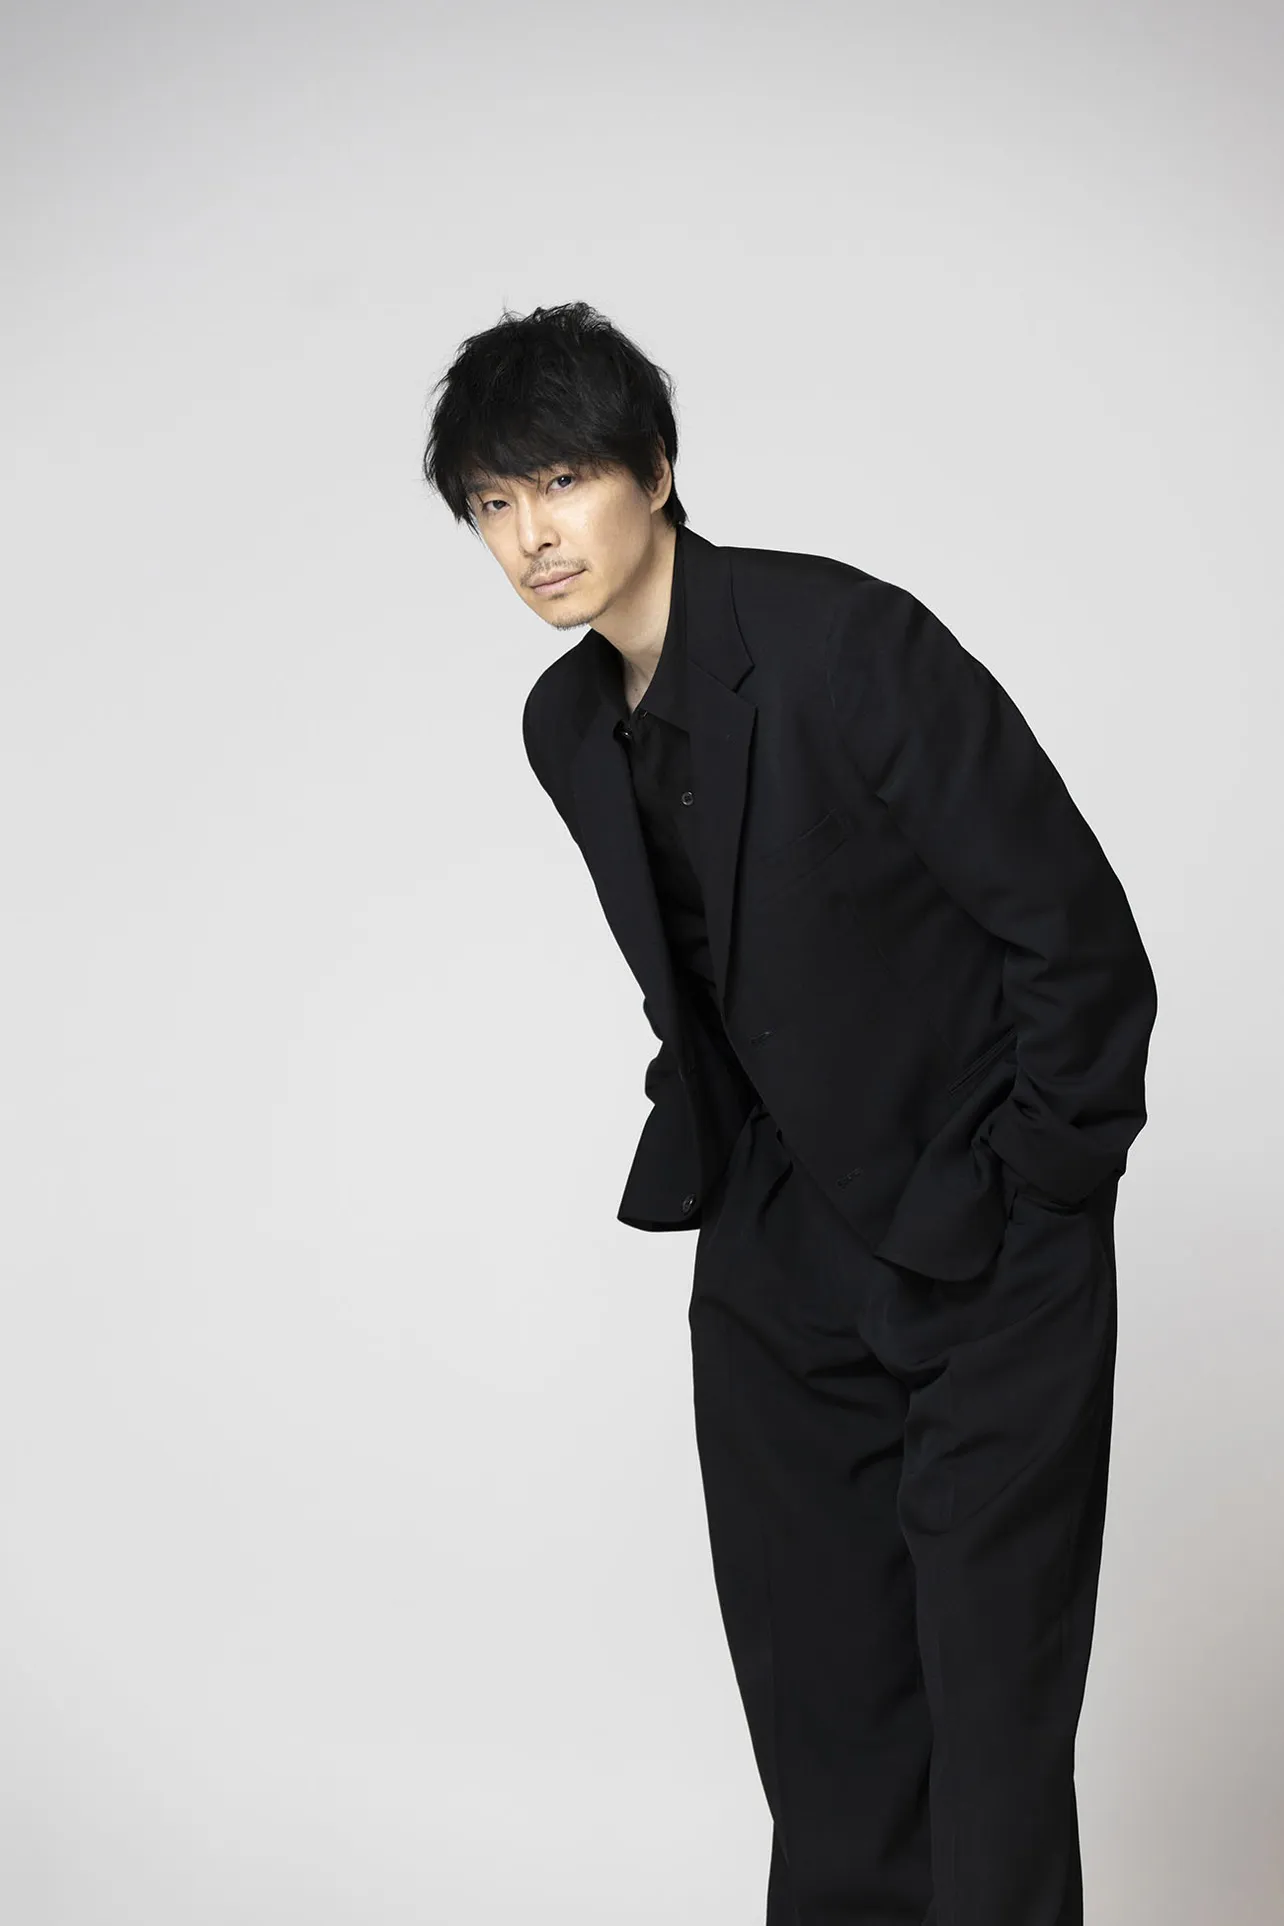 【写真】長谷川博己、抜群のスタイルでブラックスーツを着こなす